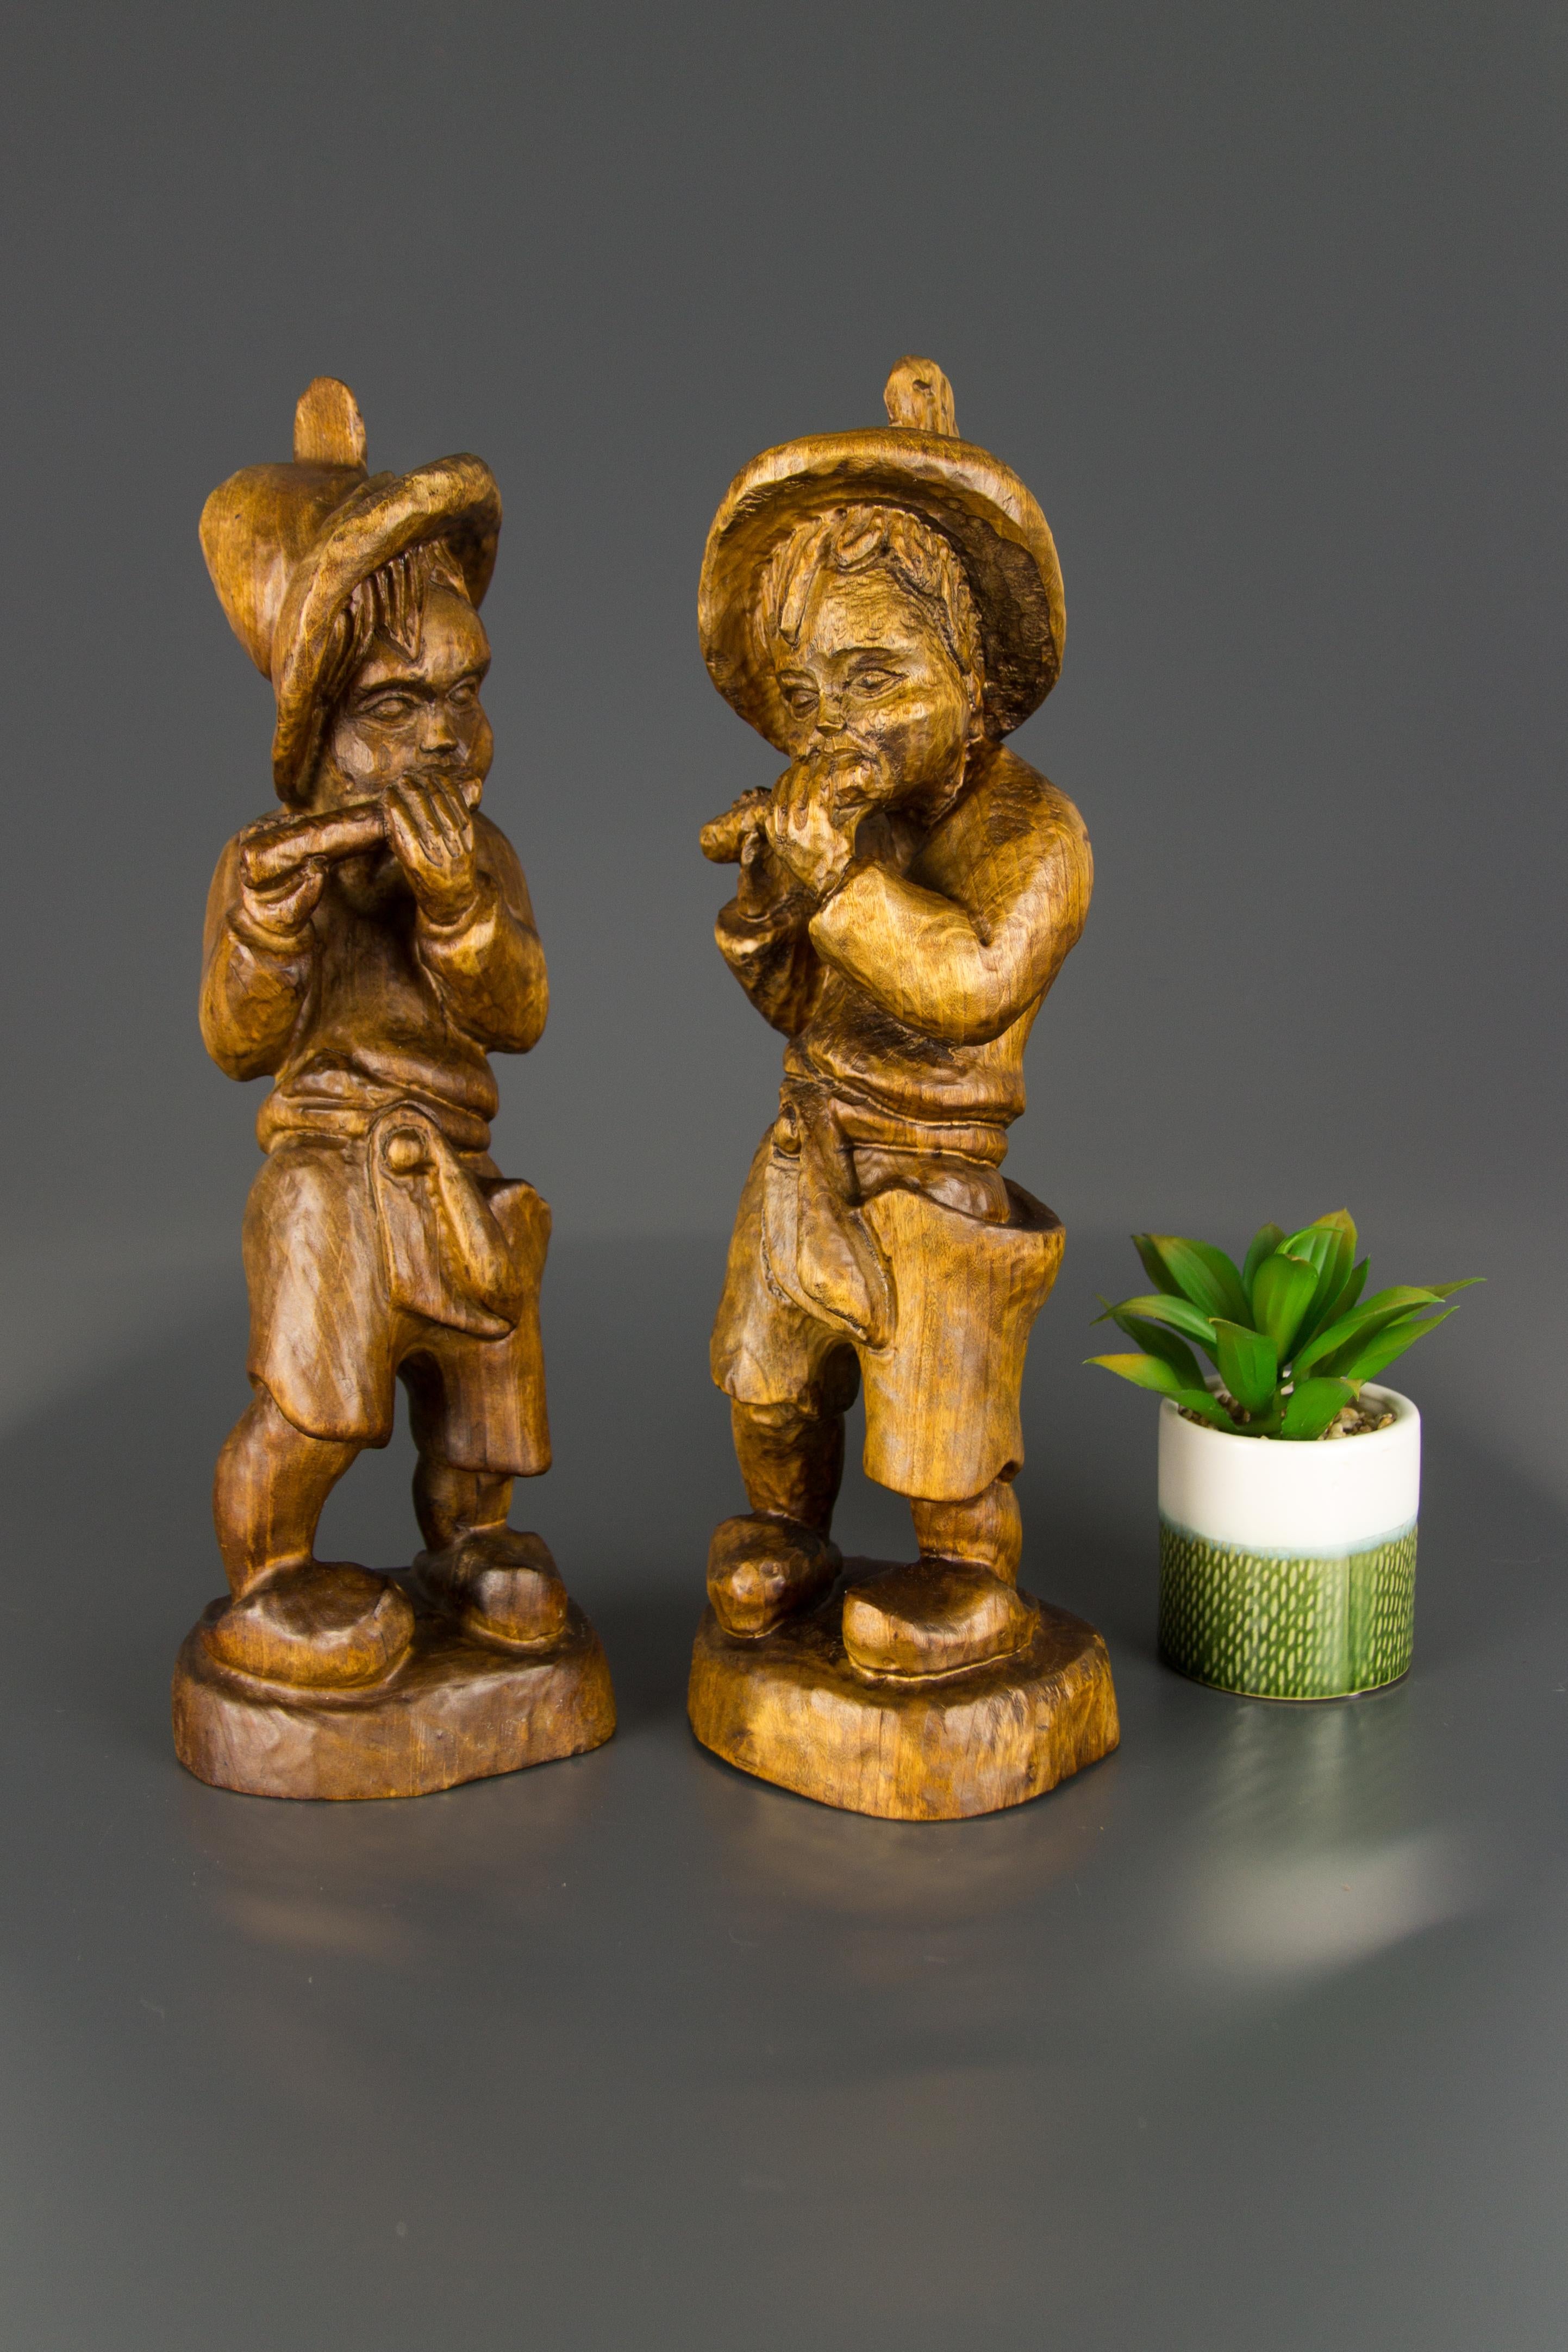 Adorable paire de figurines en bois sculpté à la main représentant deux garçons jouant du sifflet, Allemagne, première moitié du 20e siècle.
Dimensions : Hauteur 38 cm / 14.96 in, largeur environ 12 cm / 4.72 in, profondeur environ 9 cm / 3.54